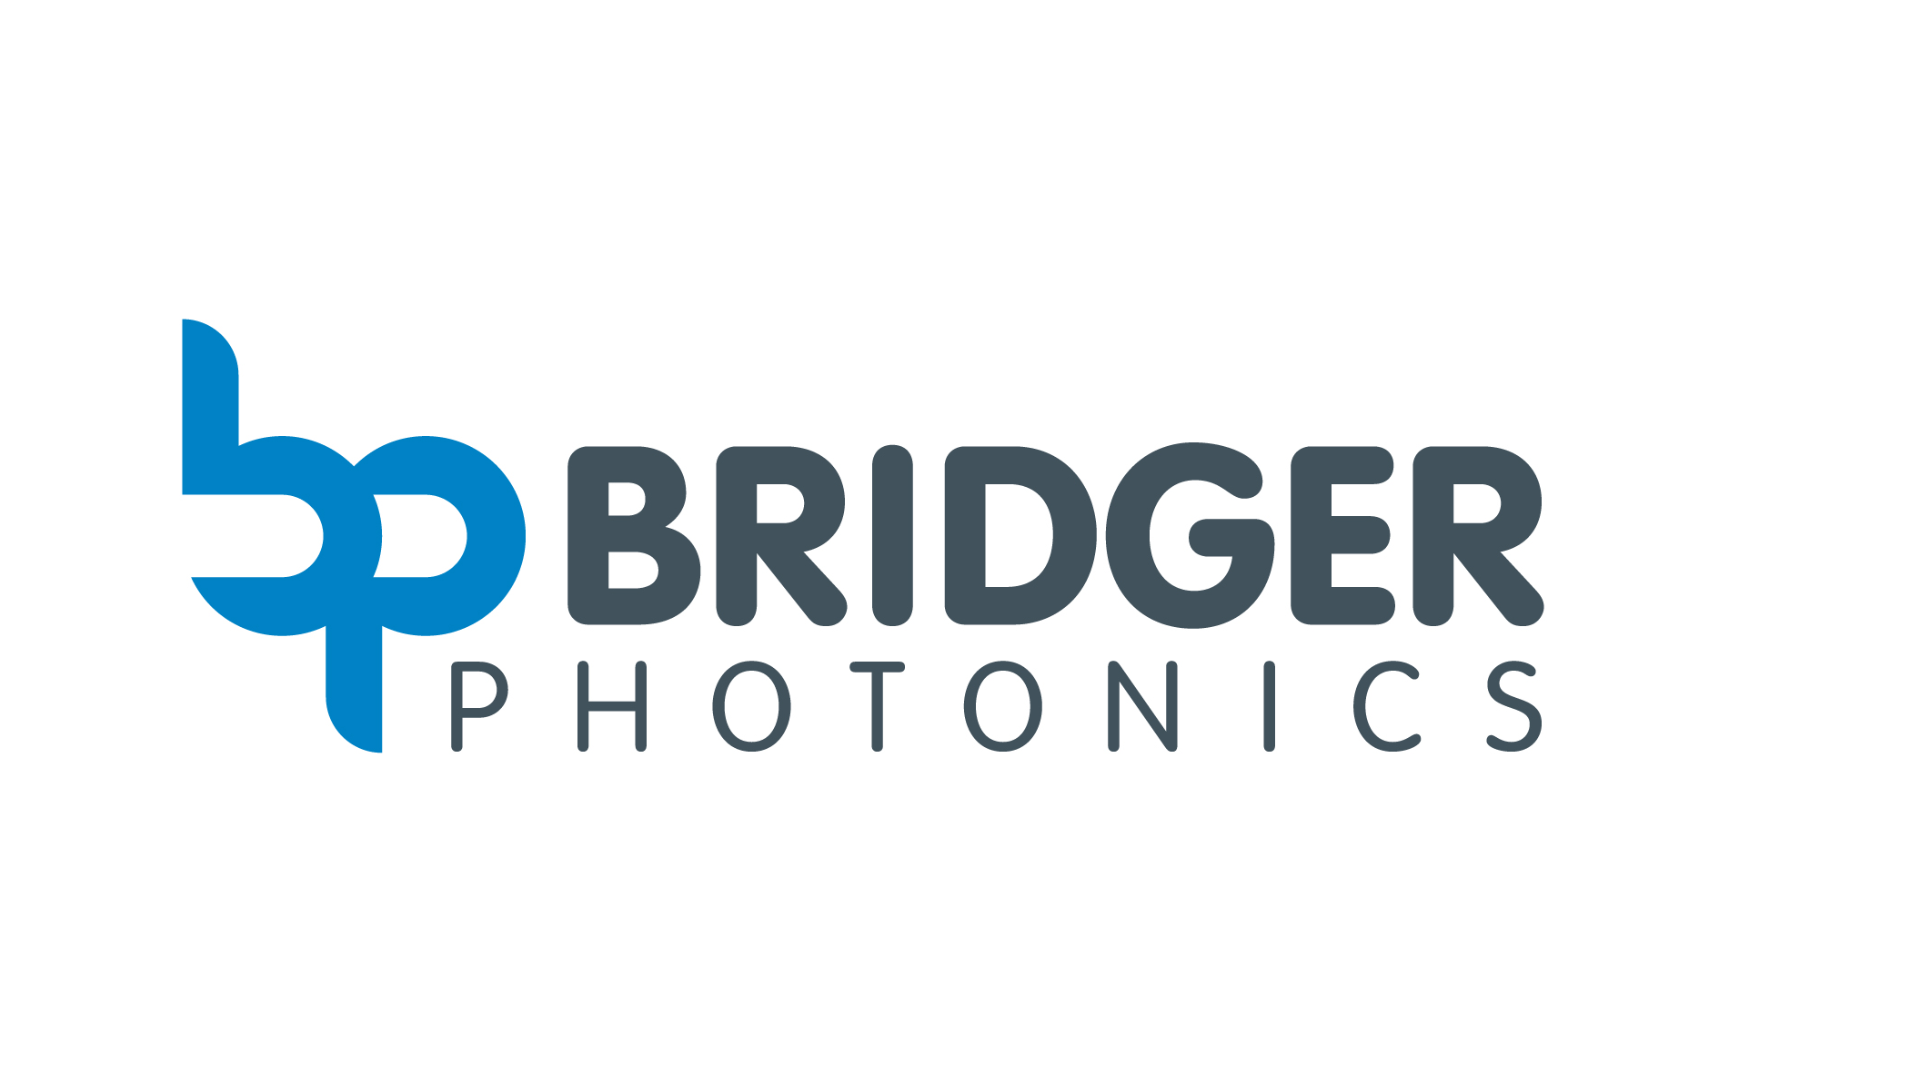 Bridger Photonics LiDAR Solutions